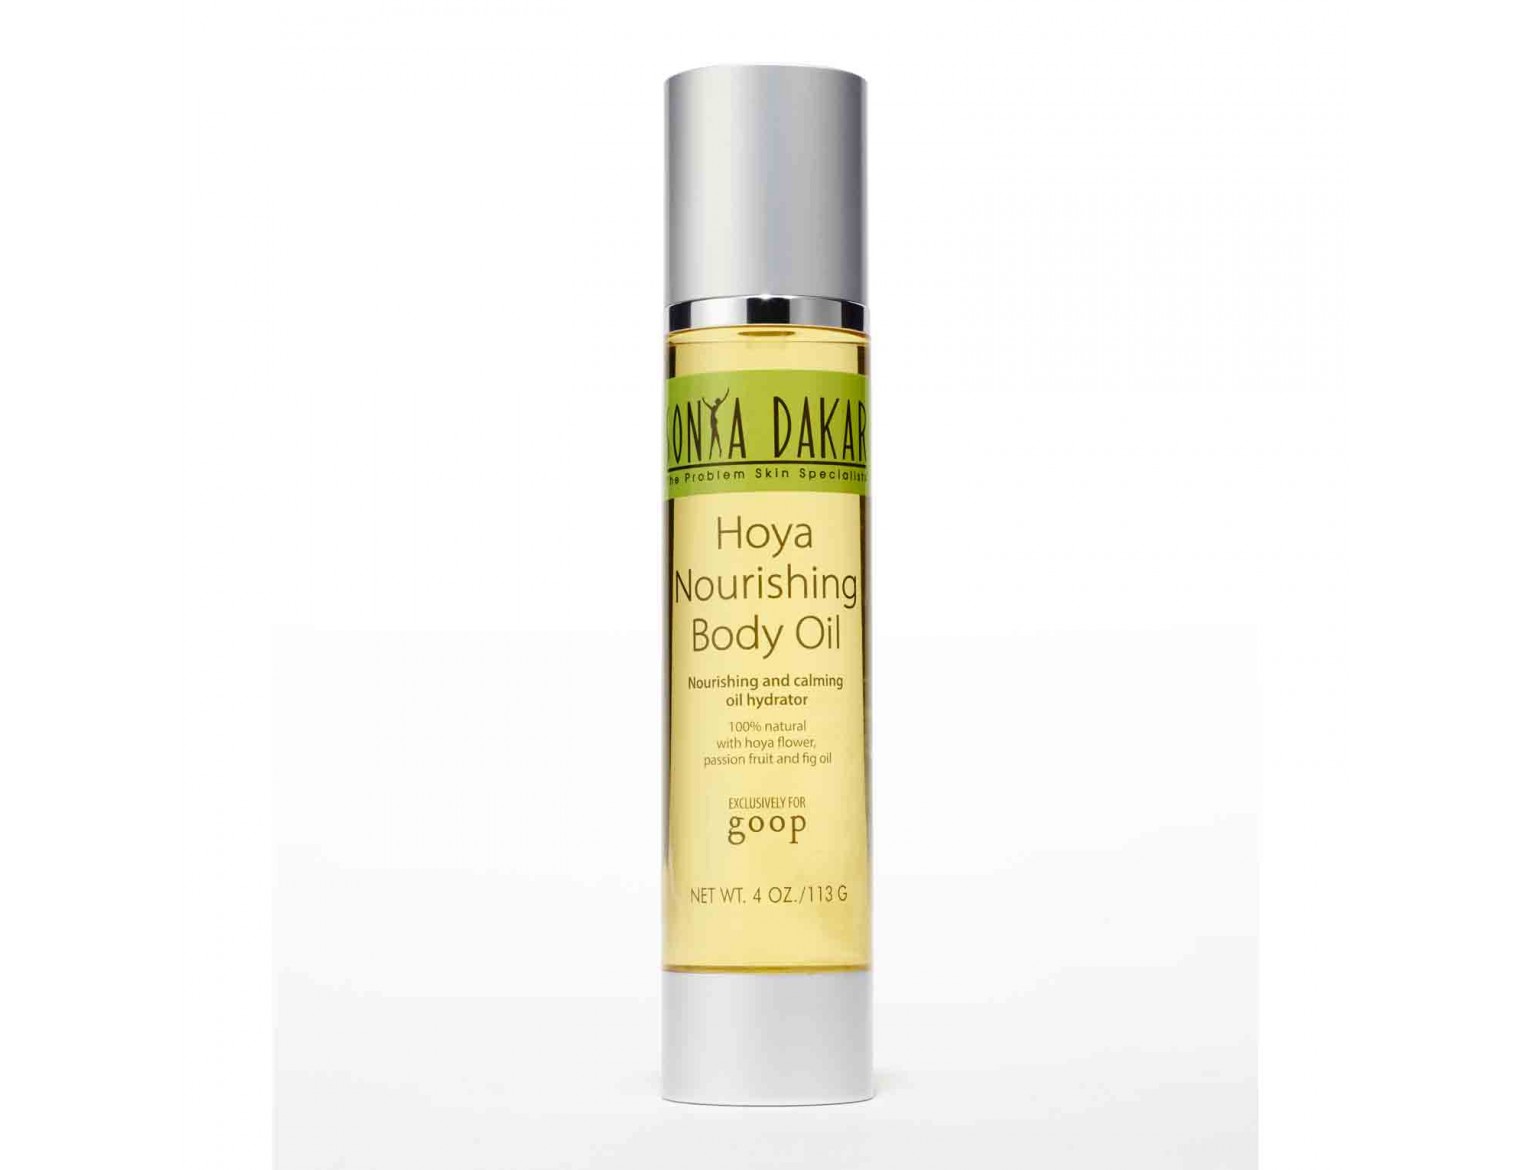 Sonya Dakar Hoya Nourishing Body Oil